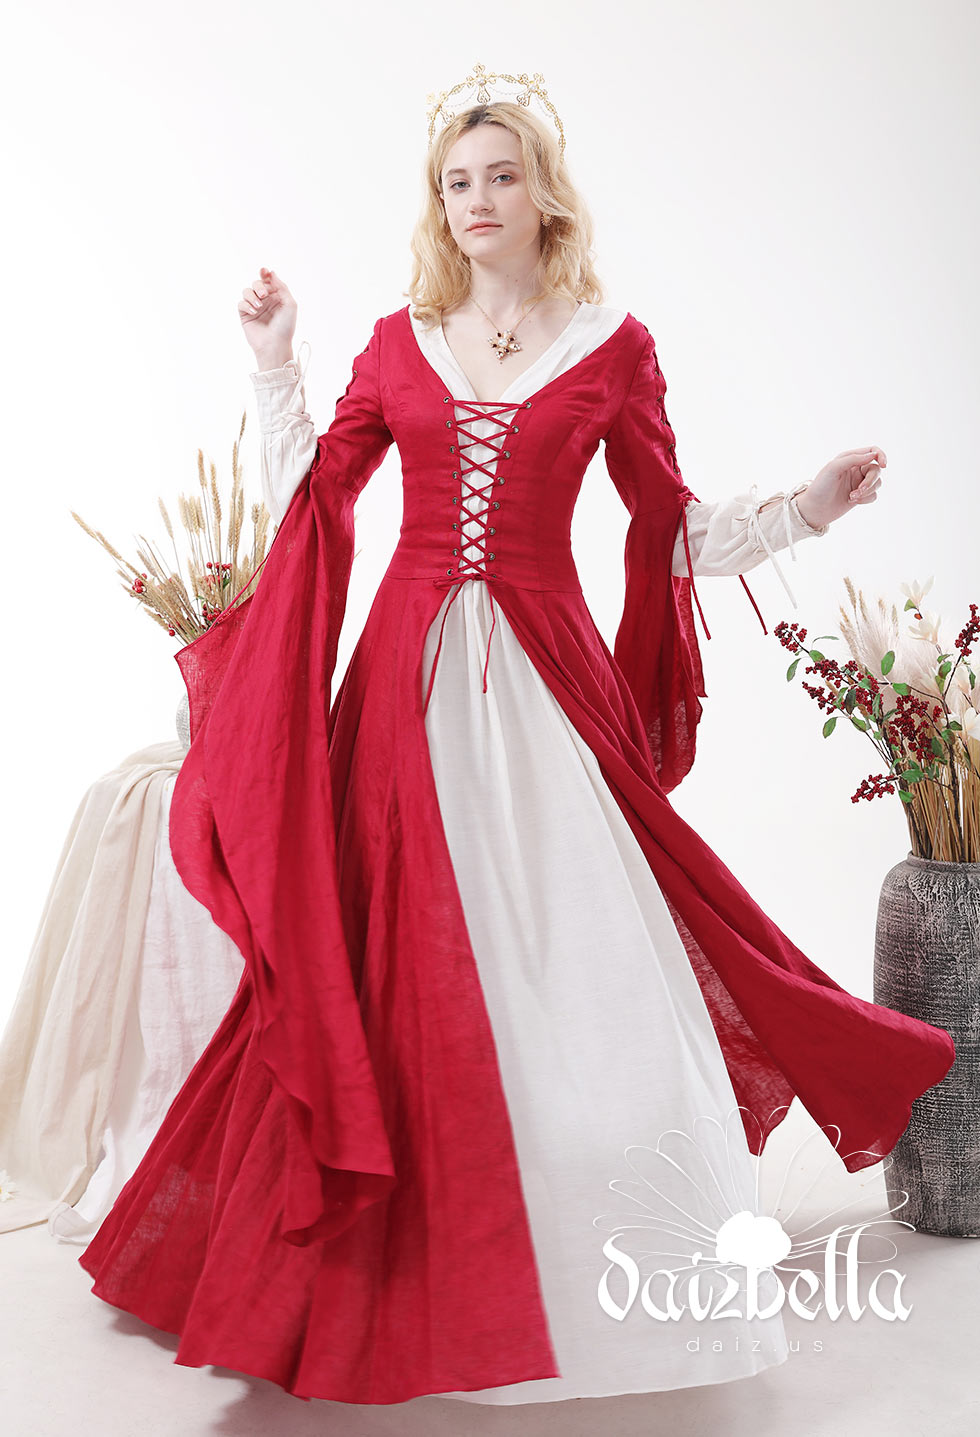 女伯爵系列:中世纪欧式复古梦幻红色连衣裙天然亚麻外